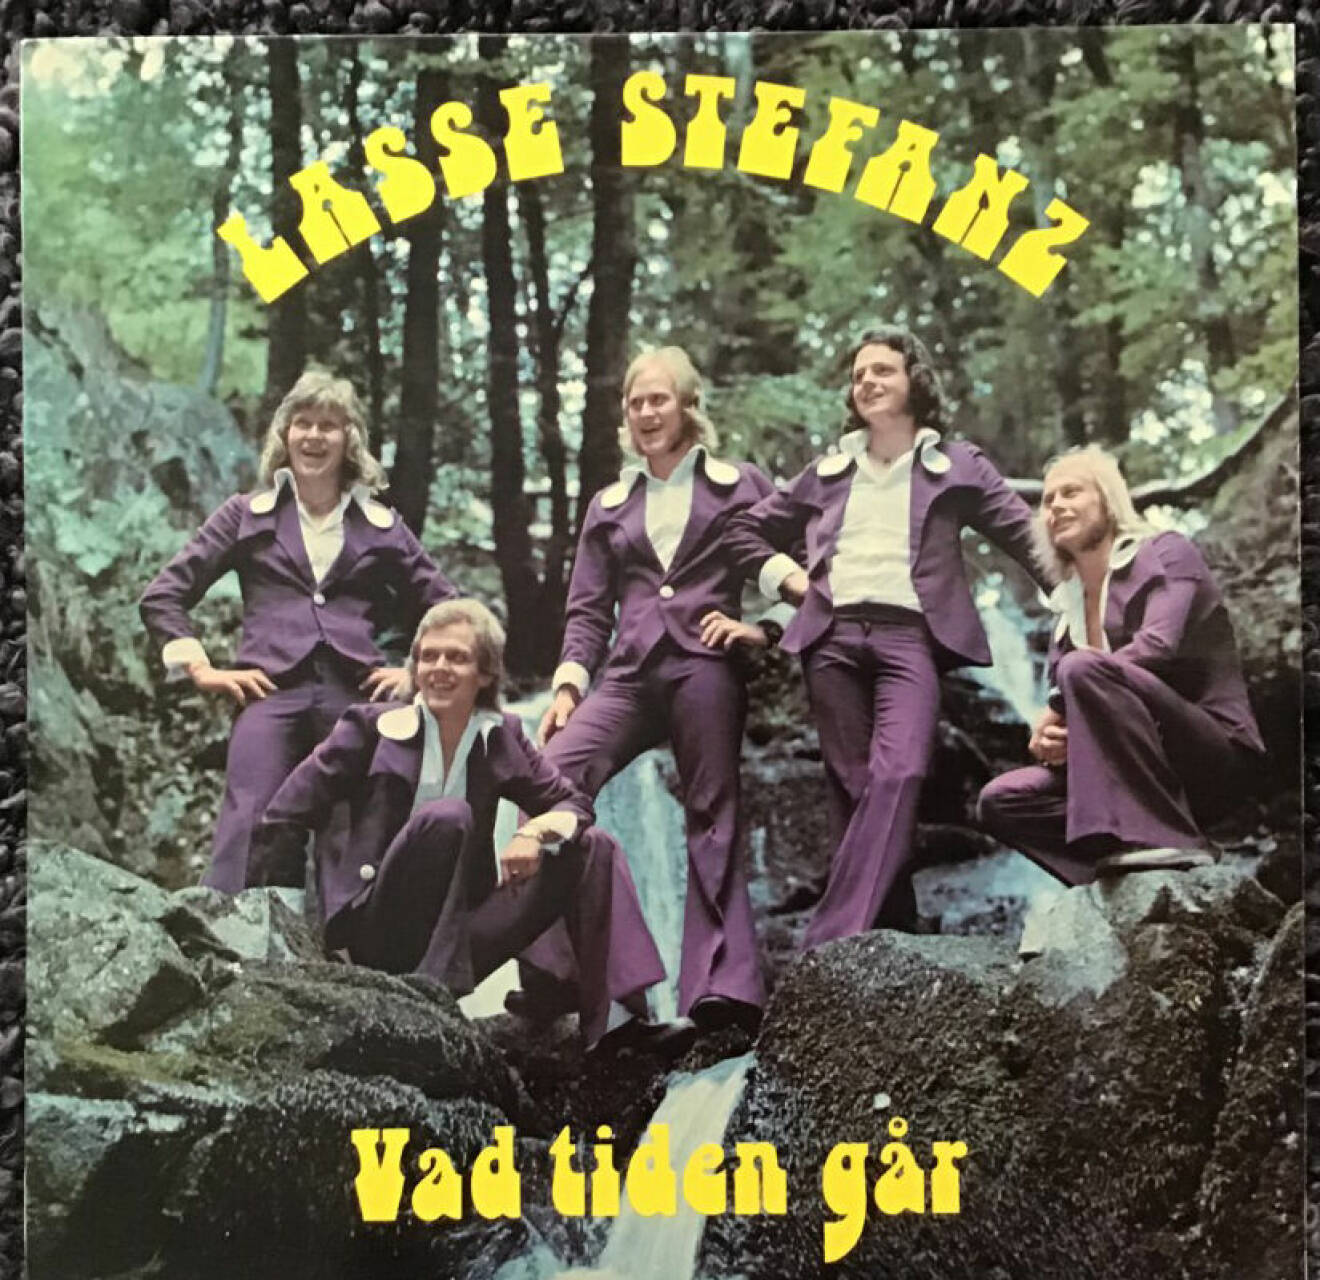 Skivomslaget till Lasse Stefanz Vad tiden går från 1974.